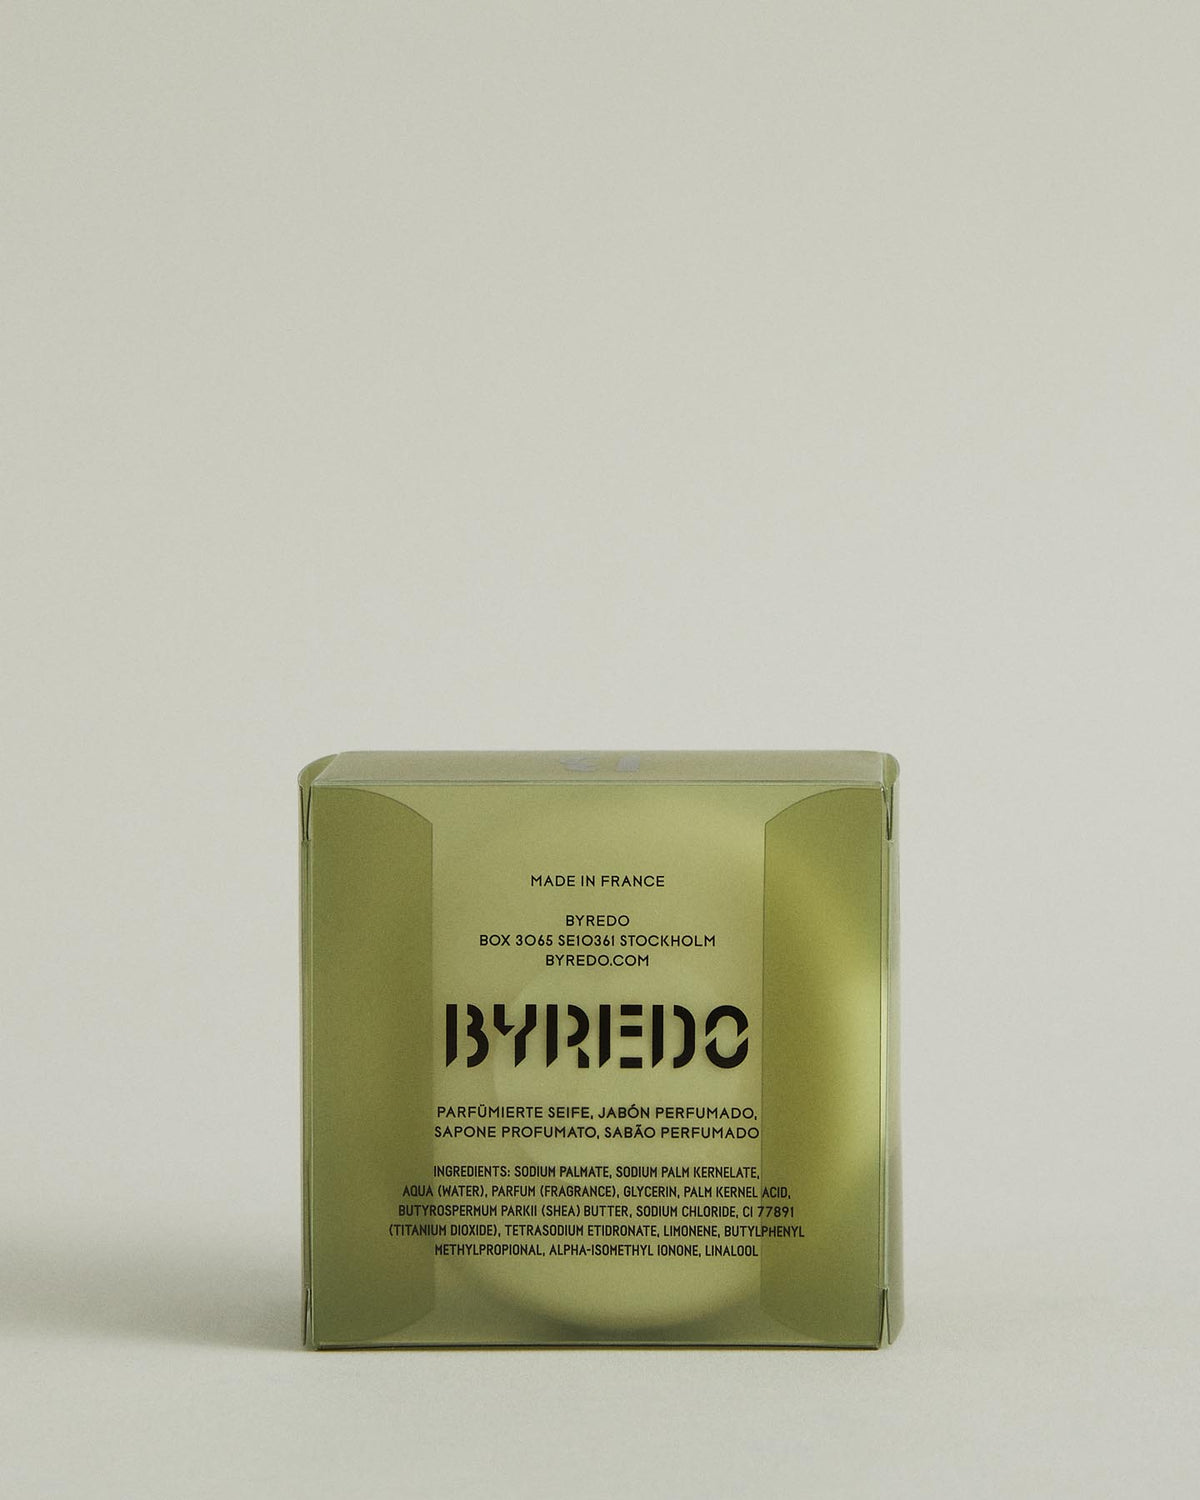 Barre de savon parfumé : Vetiver - 150 g